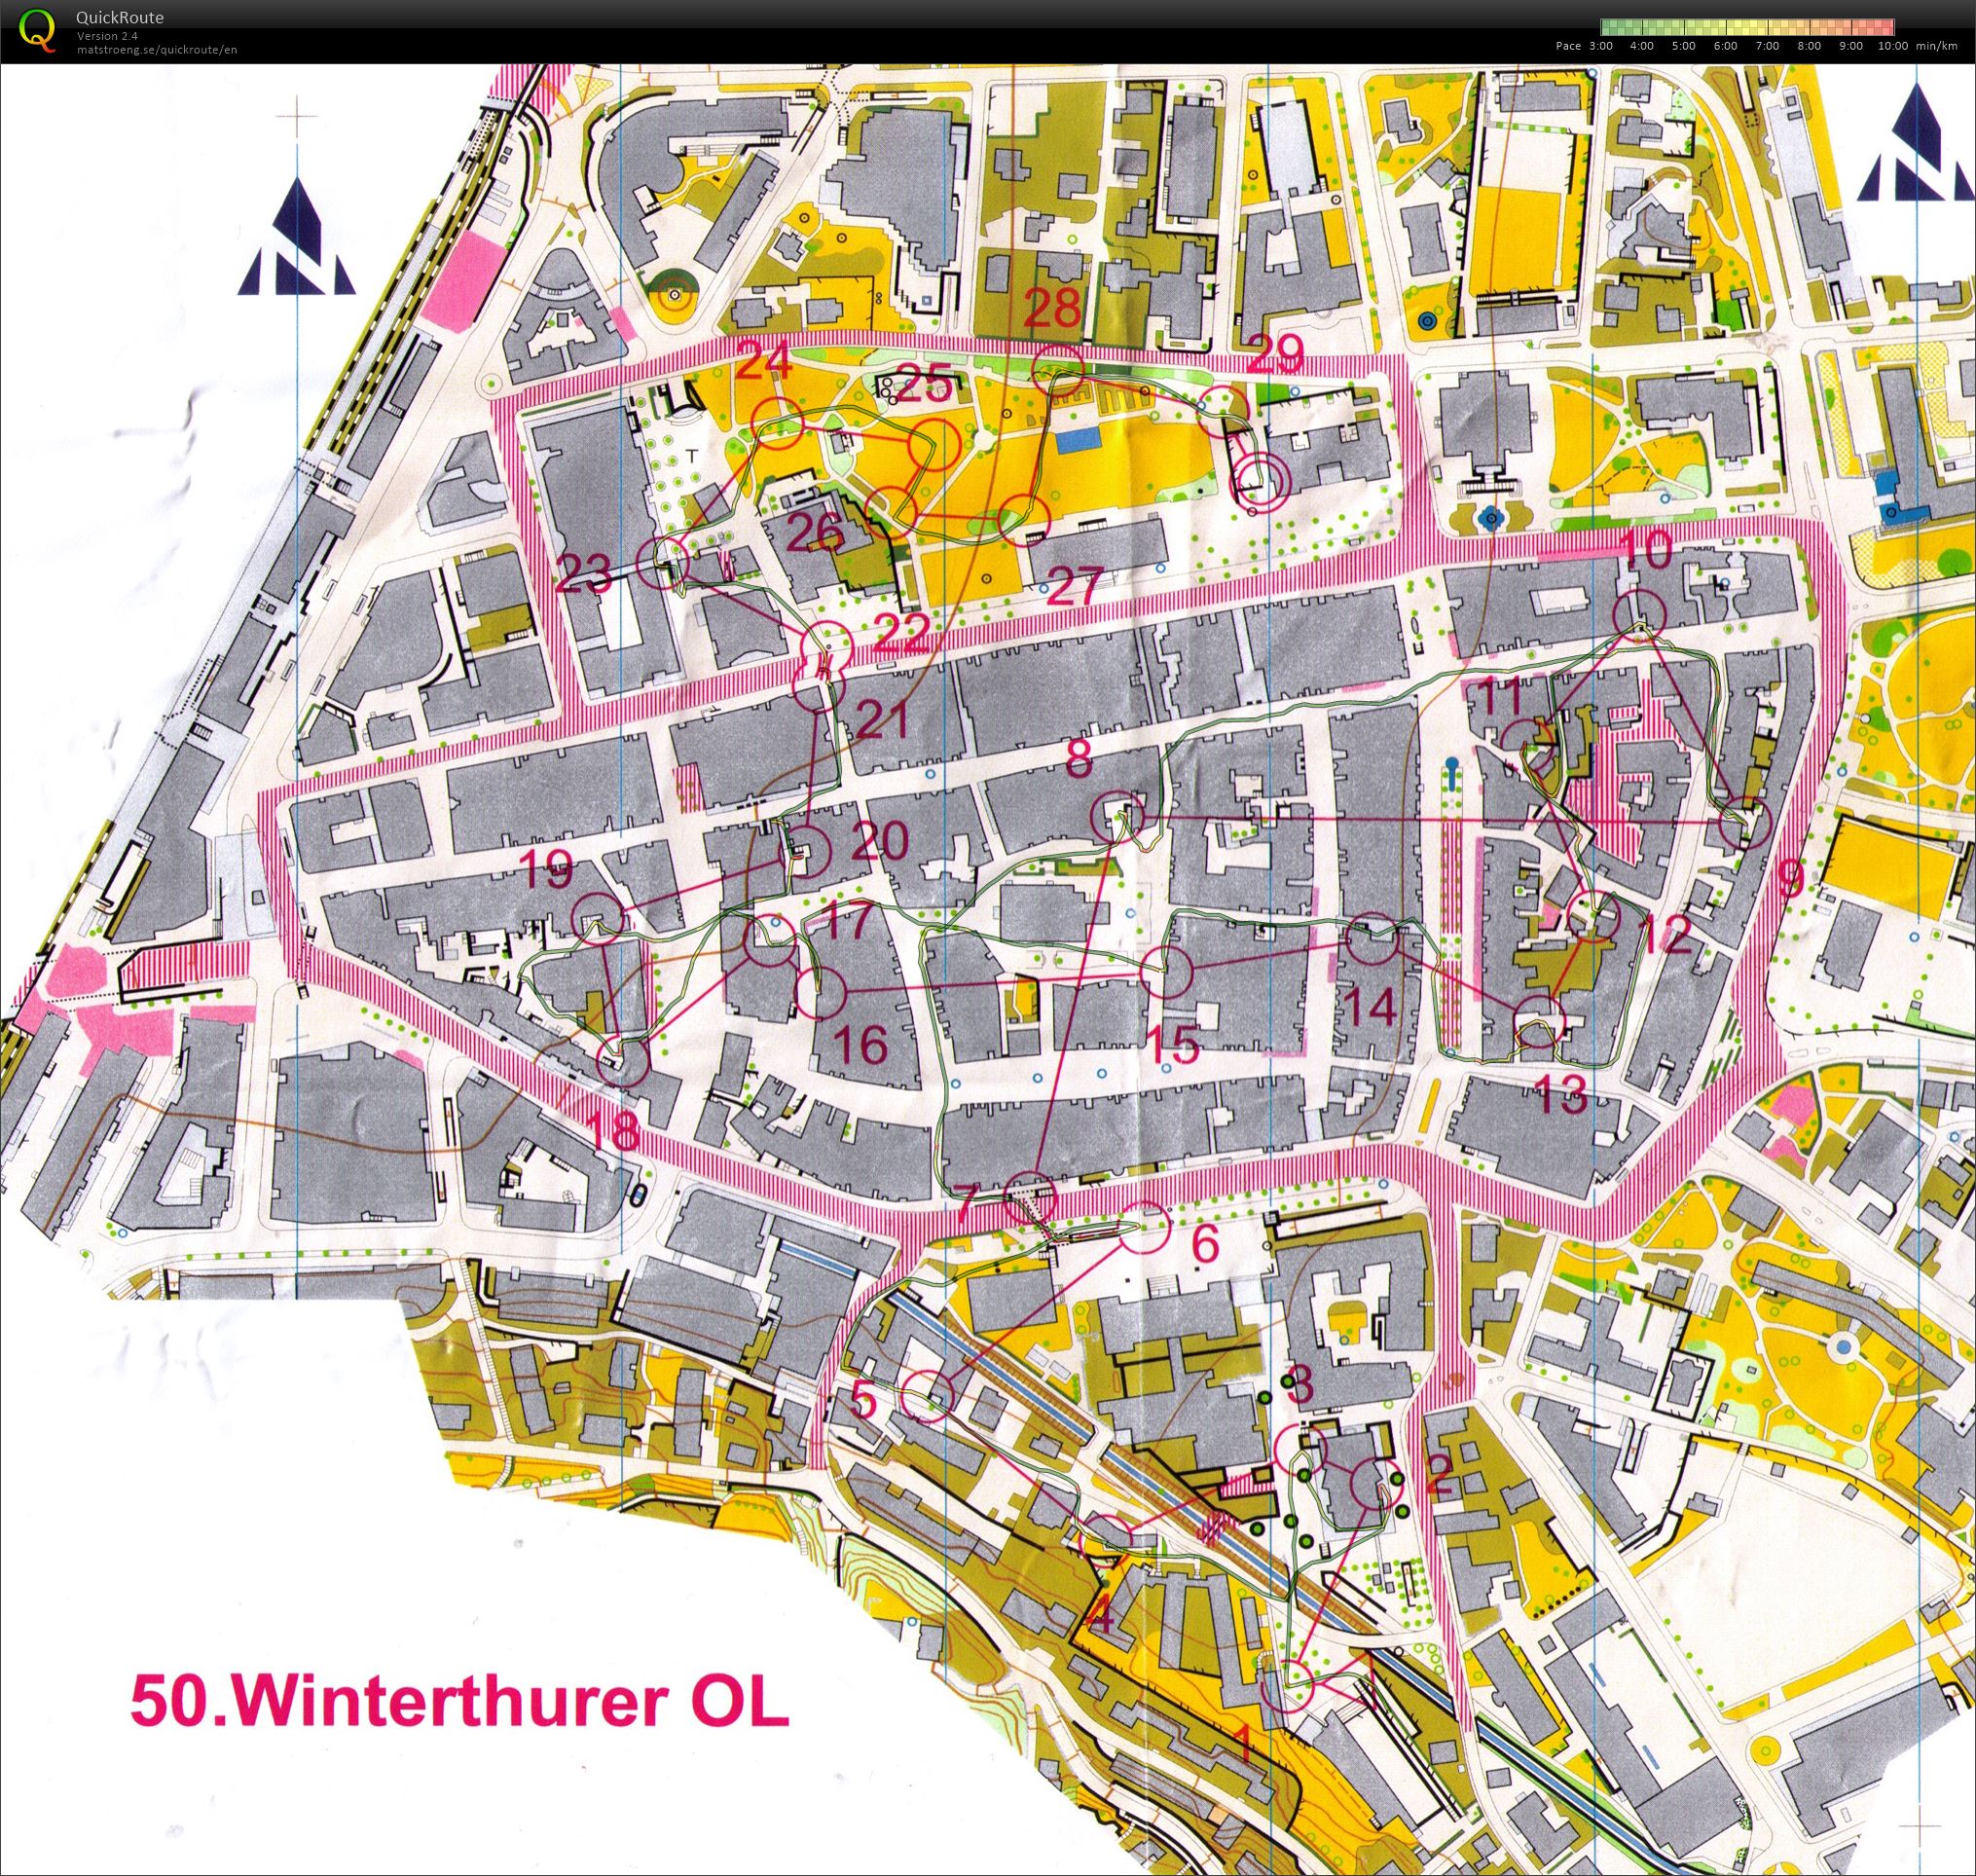 Winterthurer OL (2016-05-22)